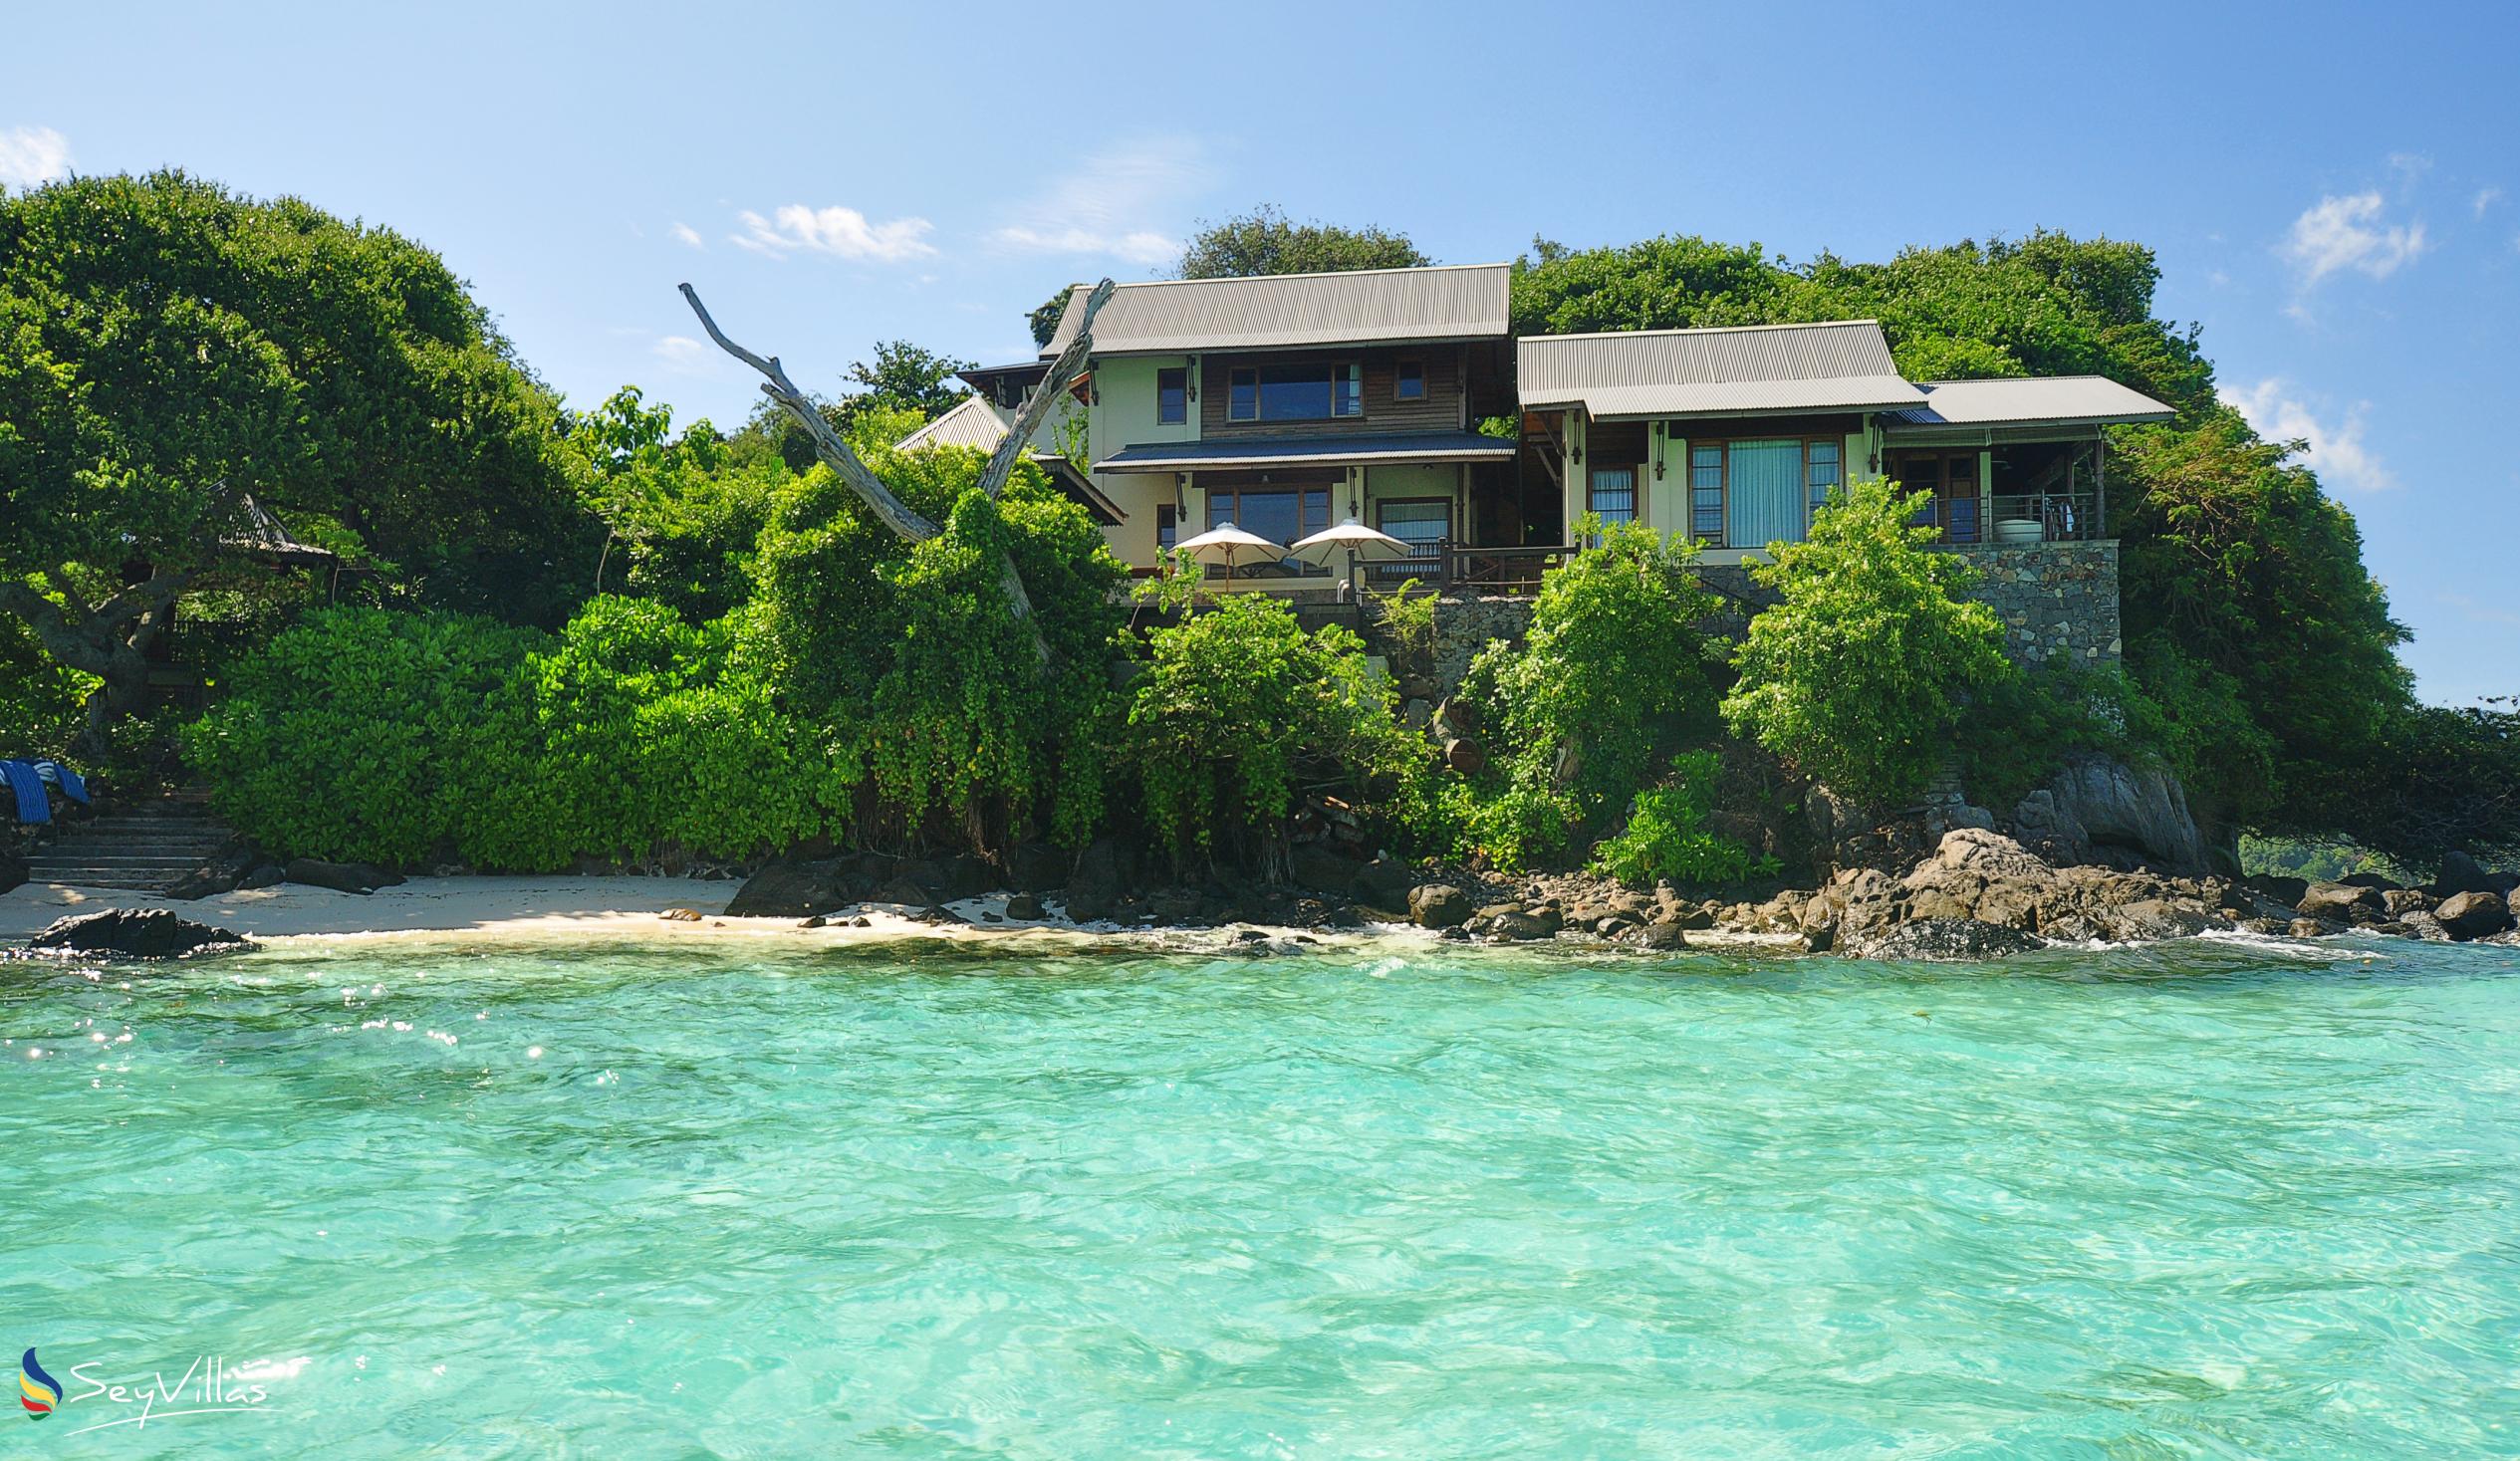 Foto 3: JA Enchanted Island Resort - Aussenbereich - Round Island (Seychellen)